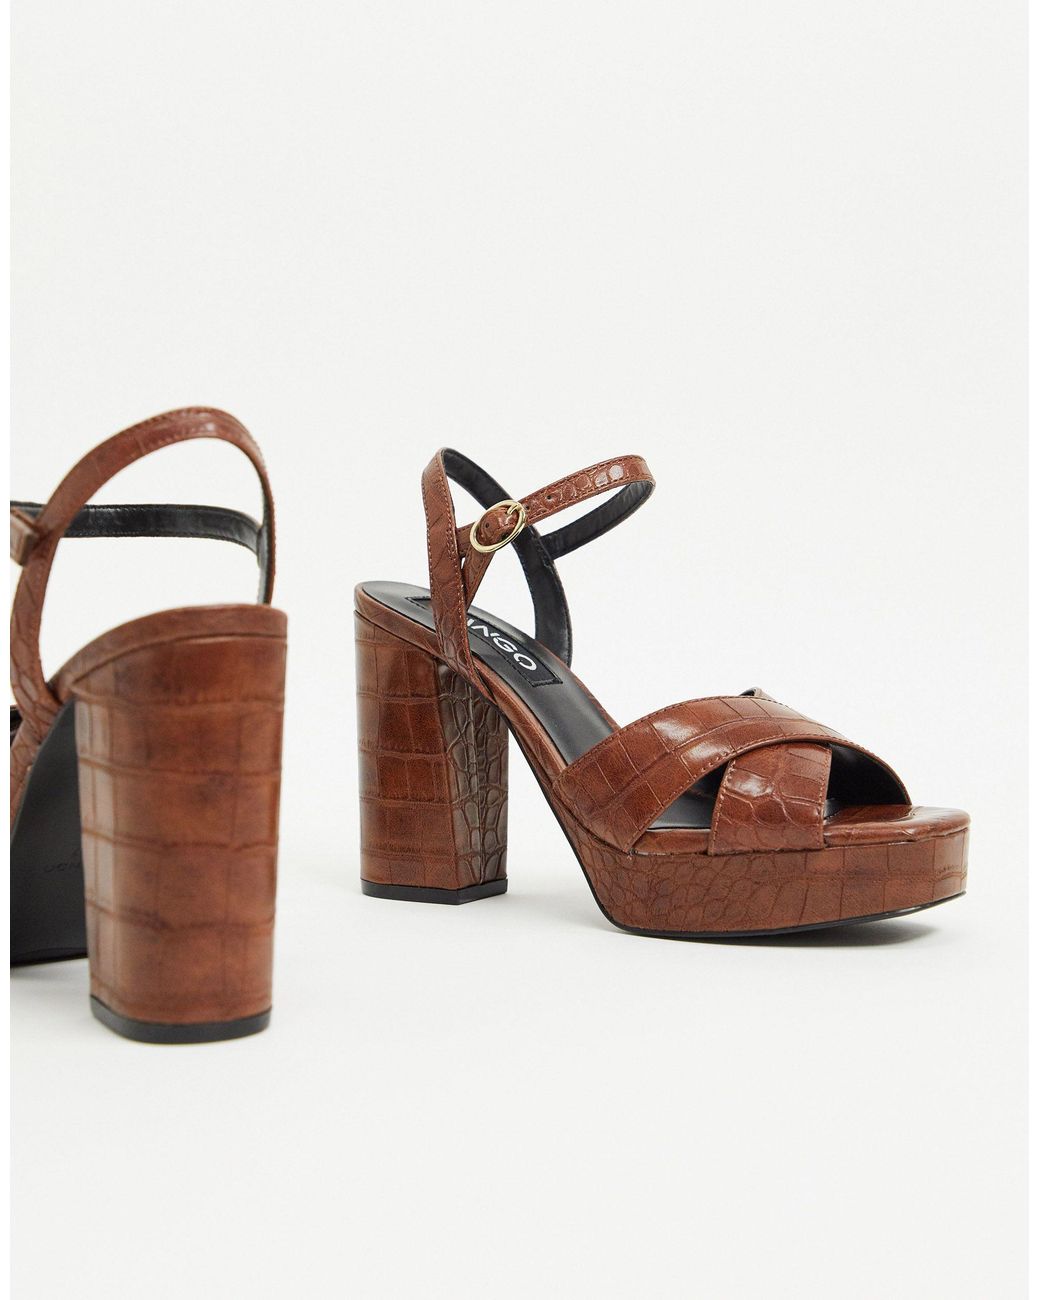 Vickie Brown Croc Print 5.5" Block Heel 2" Platform Sandal Shoes  7-11 | eBay